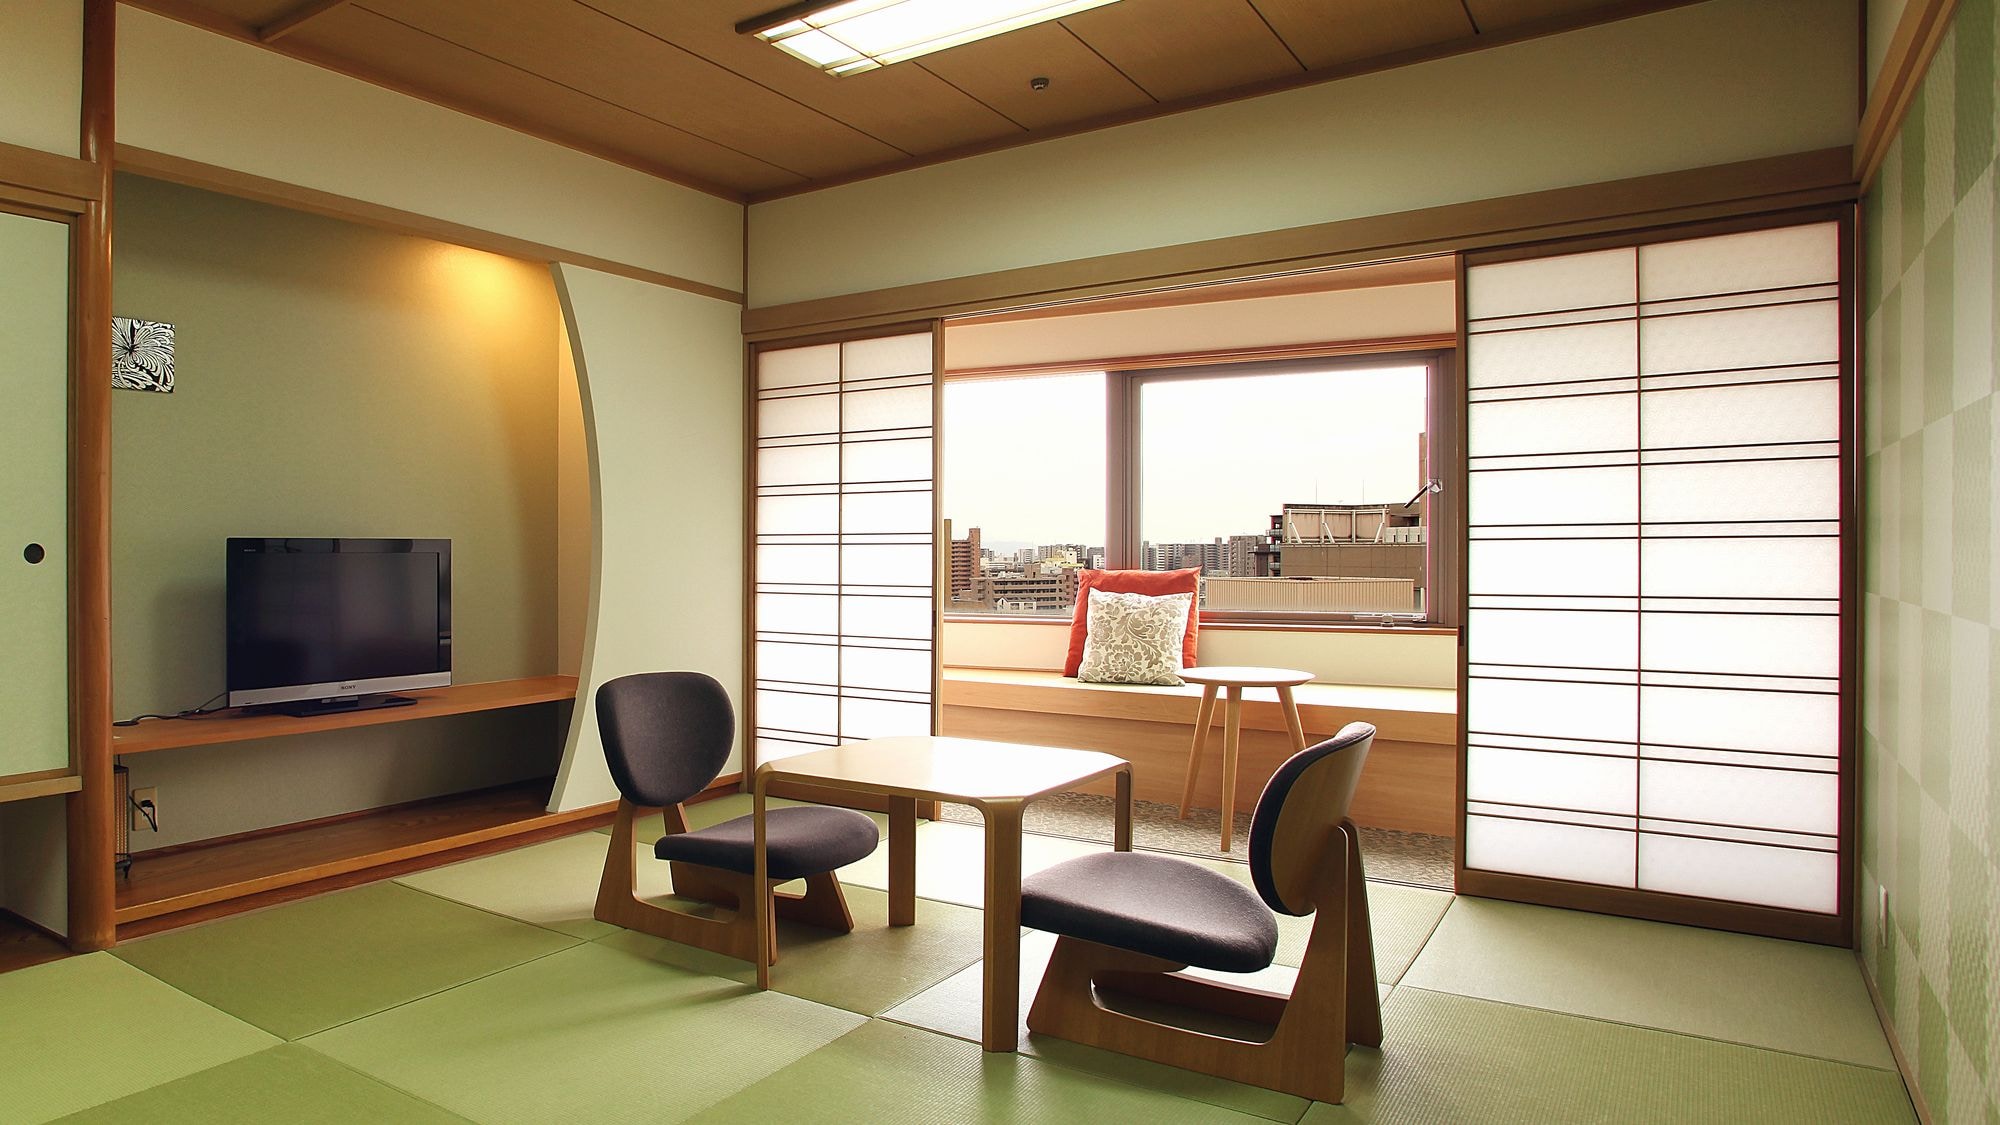 ◆ ห้องพักทั่วไป (ห้องสไตล์ญี่ปุ่น) มีฝั่งเมืองและฝั่งภูเขา และภาพเป็นฝั่งเมือง